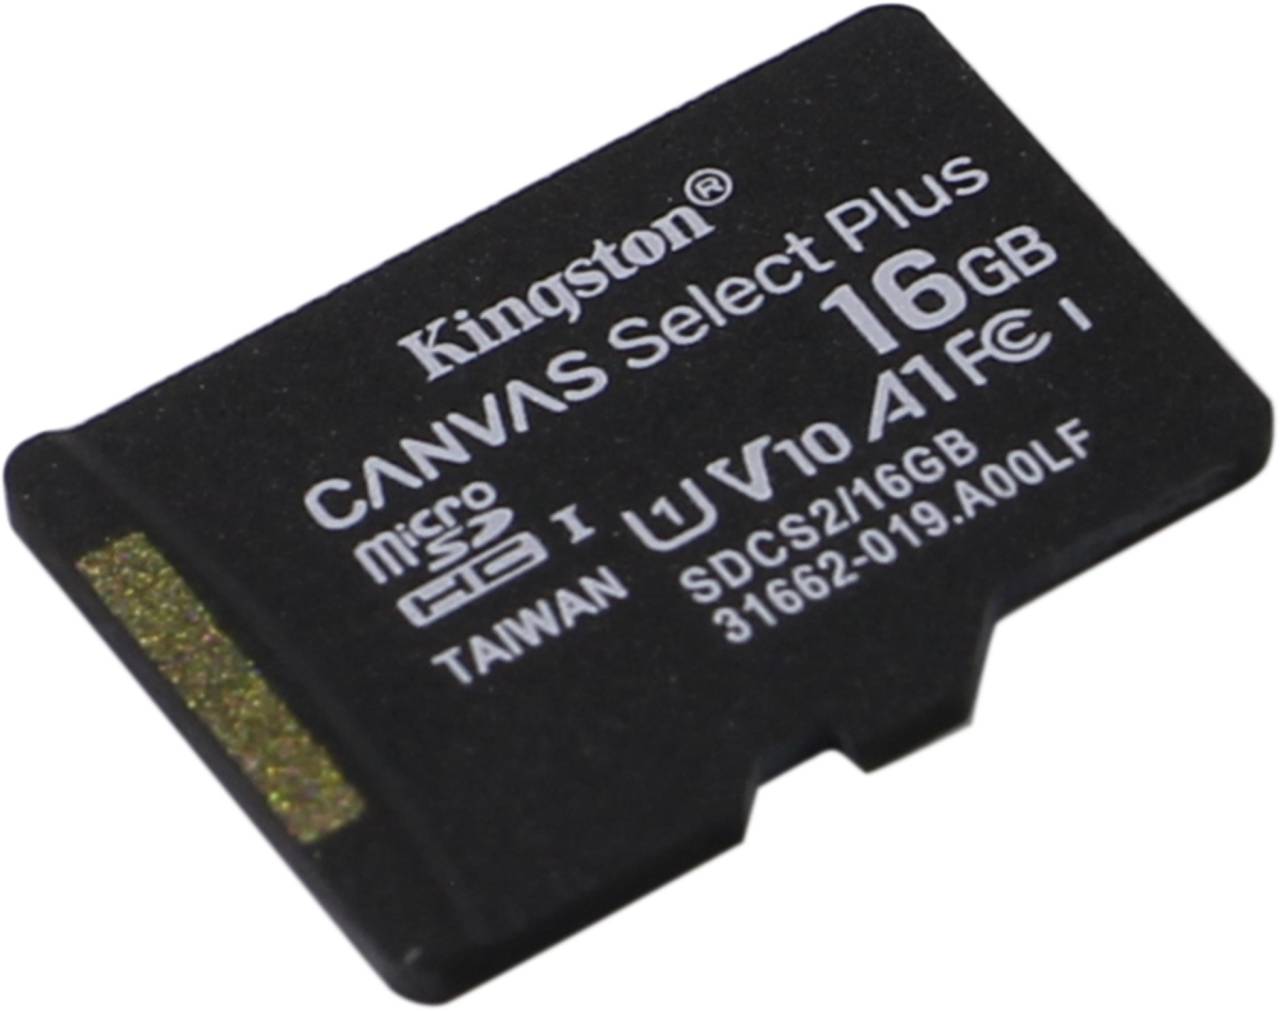    microSDHC 16Gb Kingston [SDCS2/16GBSP] A1 V10 UHS-I U1